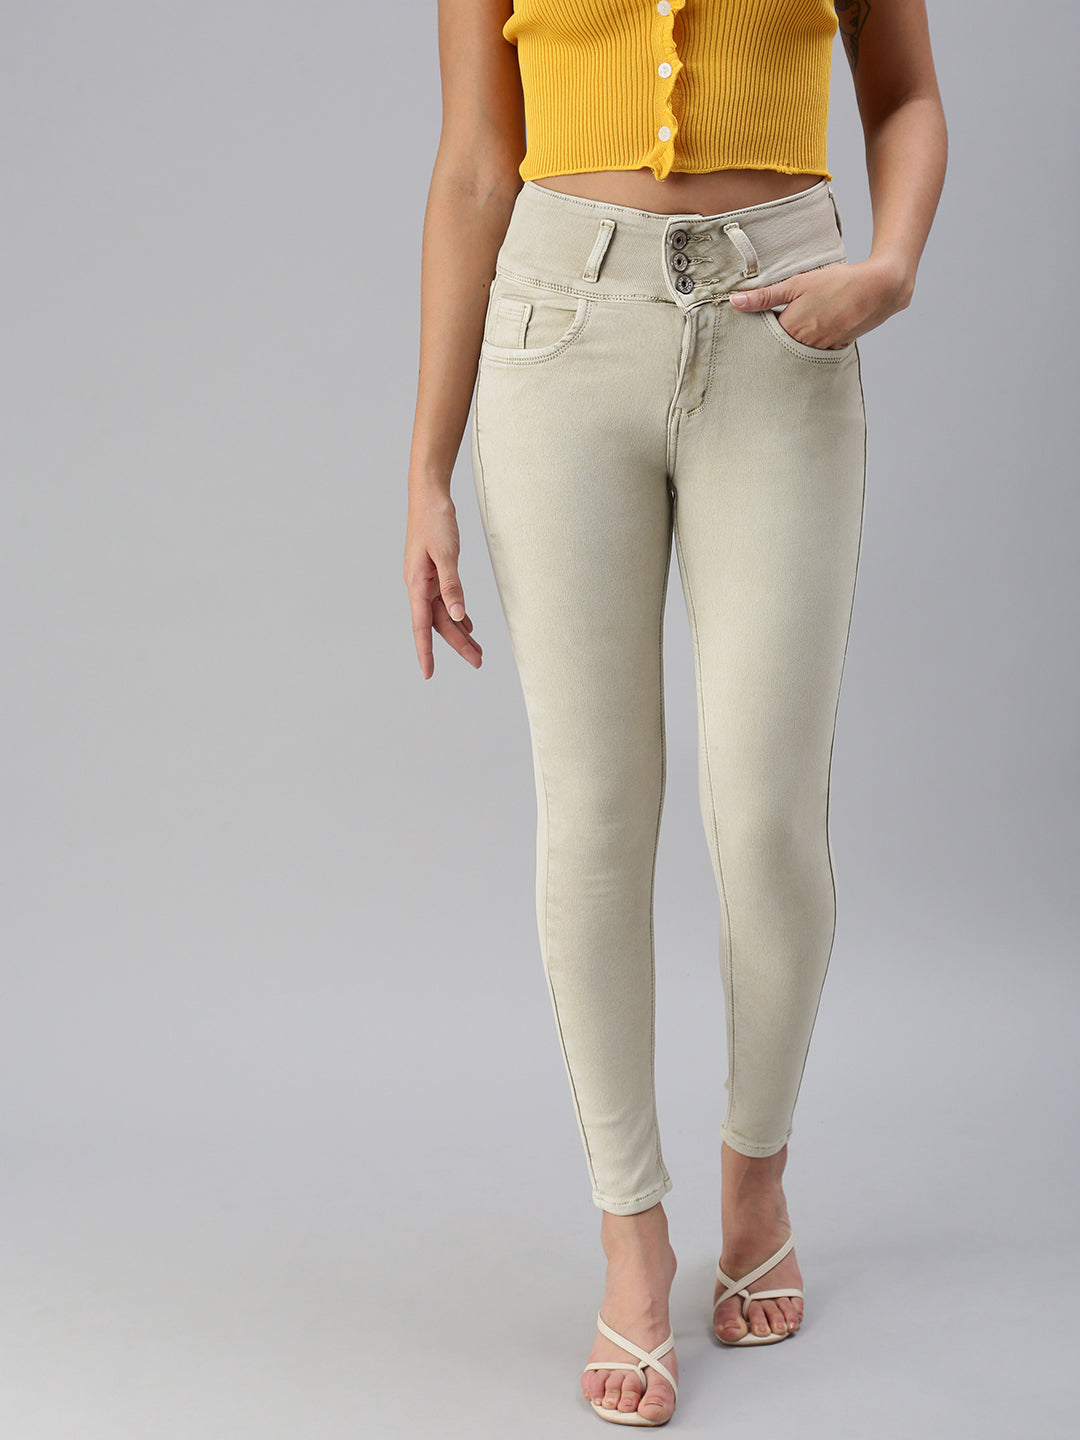 Women's Beige Solid Denim Skinny Jeans